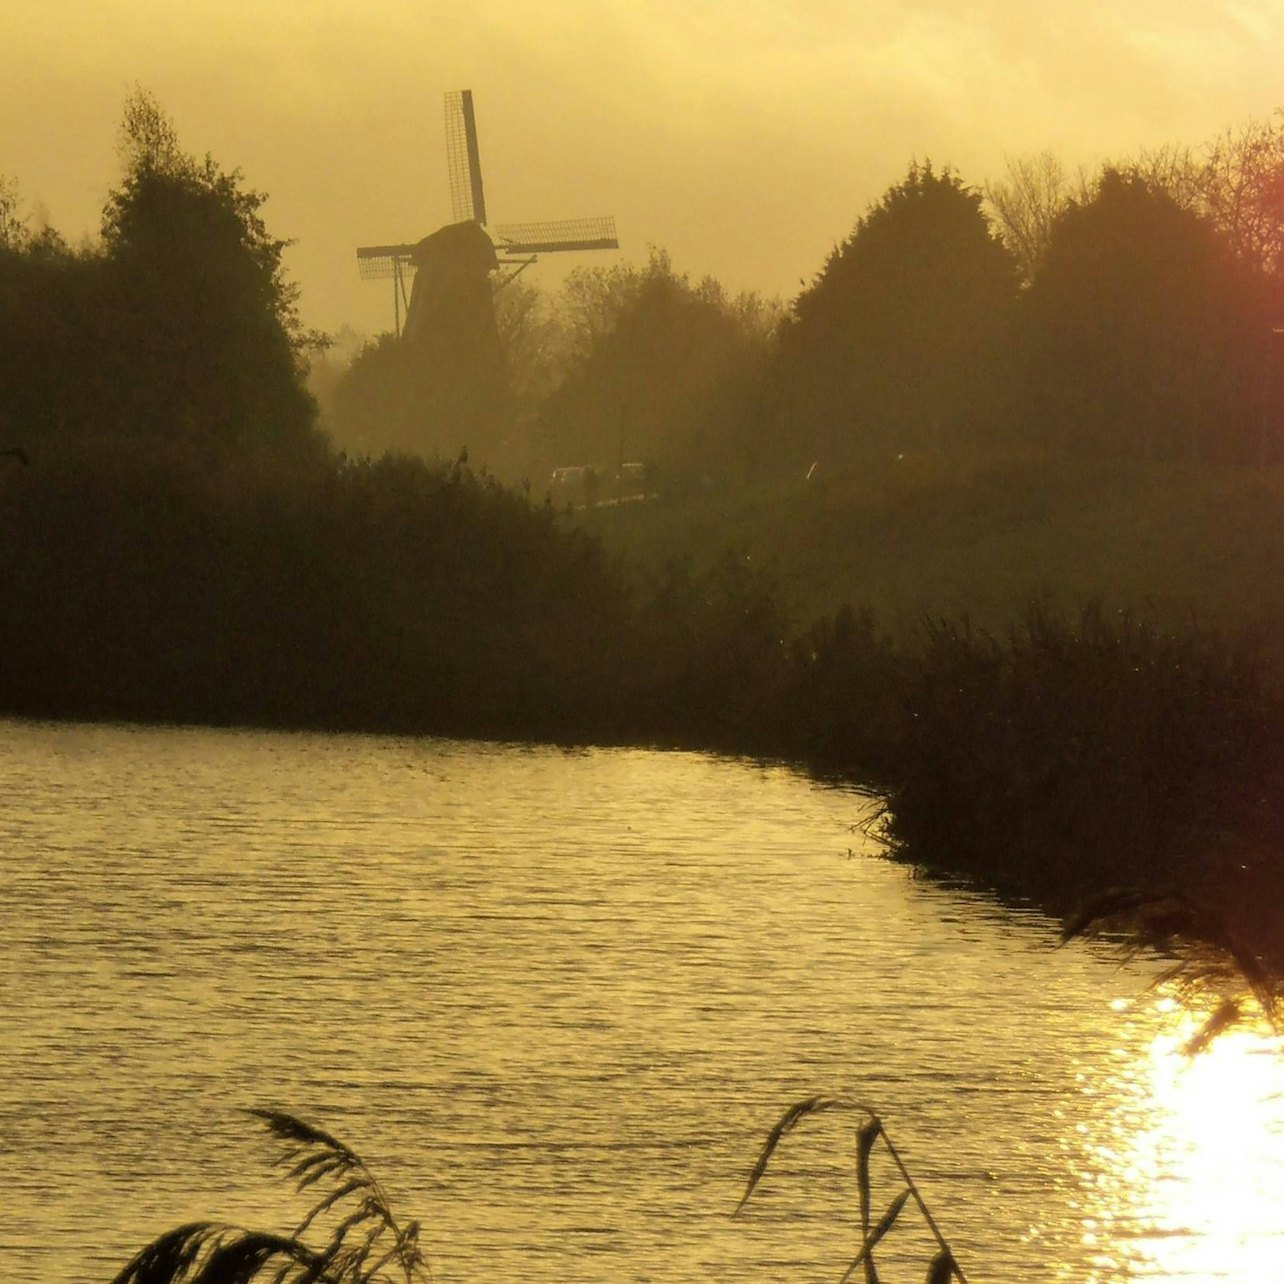 Moinho de vento de Amsterdã Sloten - Acomodações em Amesterdão